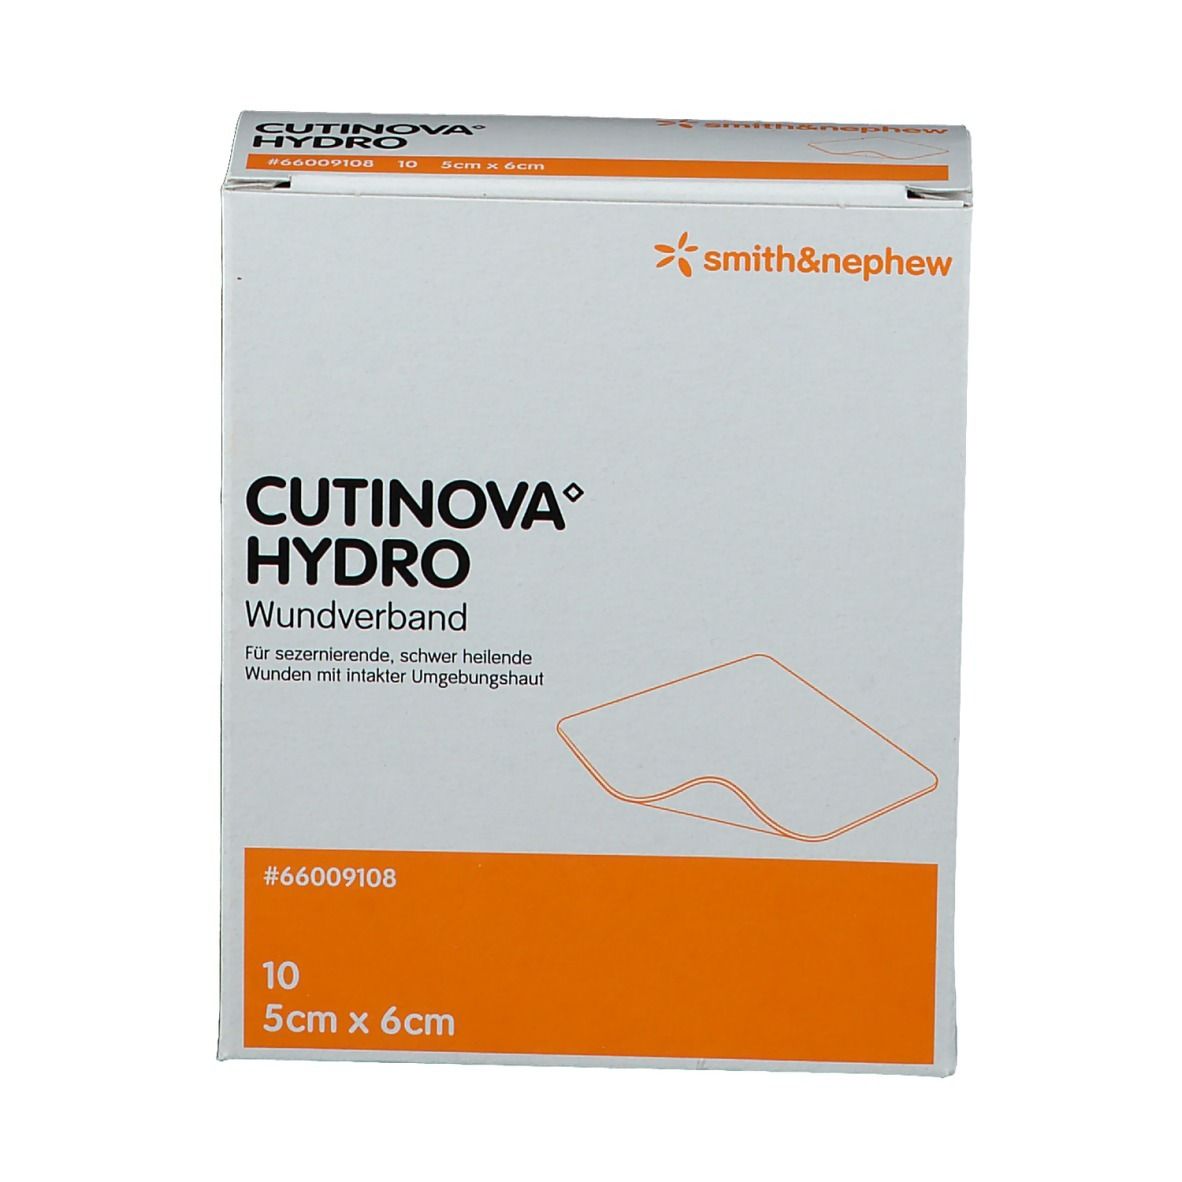 CUTINOVA® Hydro haftende Wundauflage 5 cm x 6 cm steril